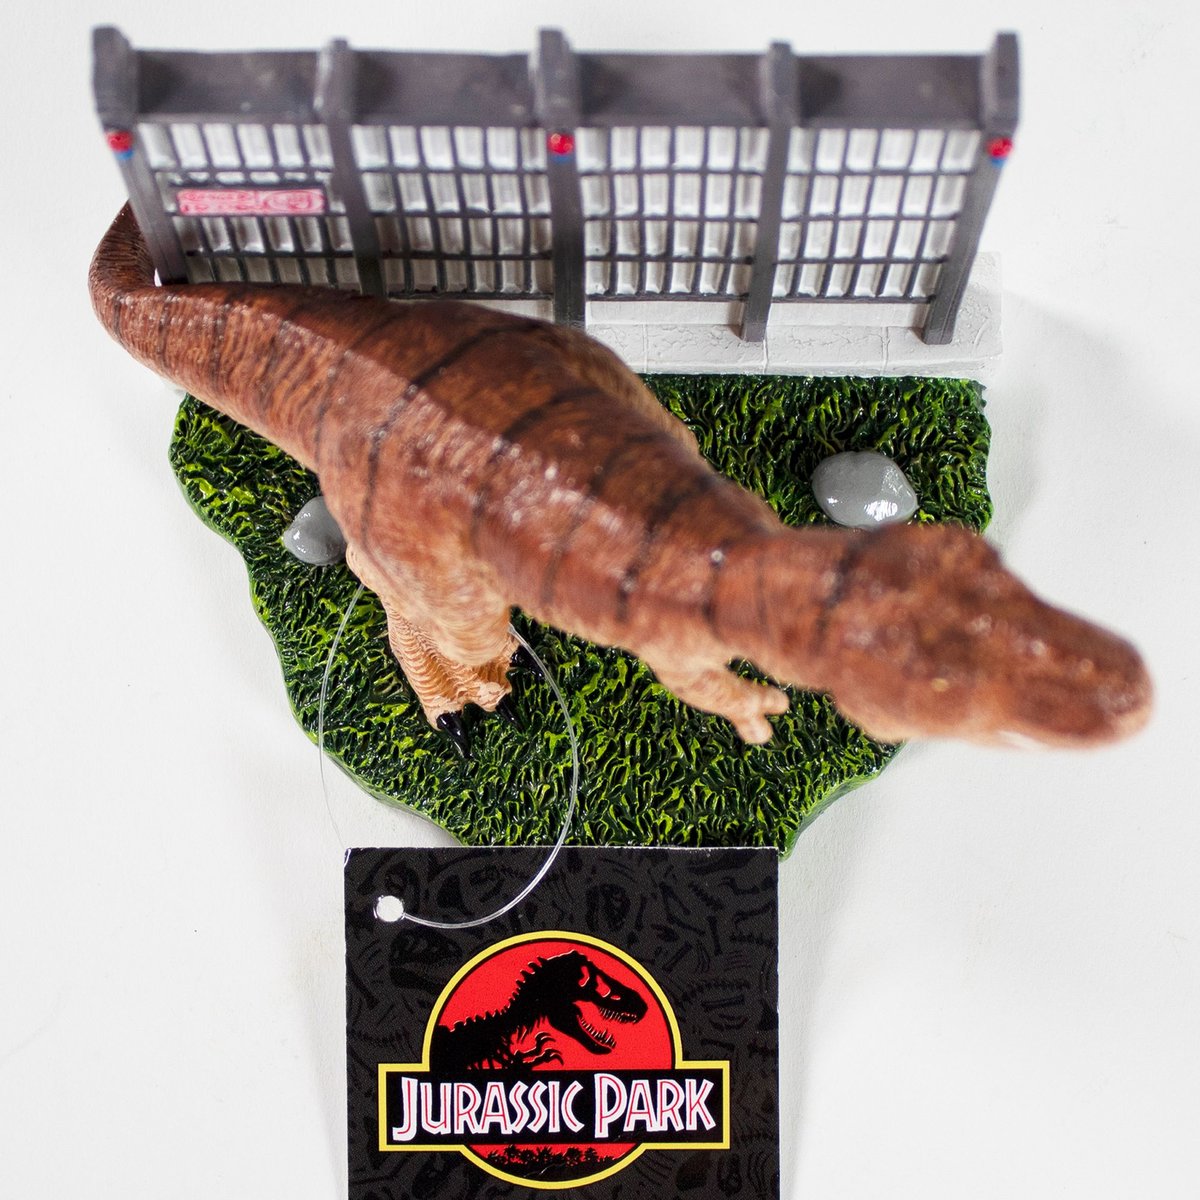 Jurassic Park Aquarium Decor 